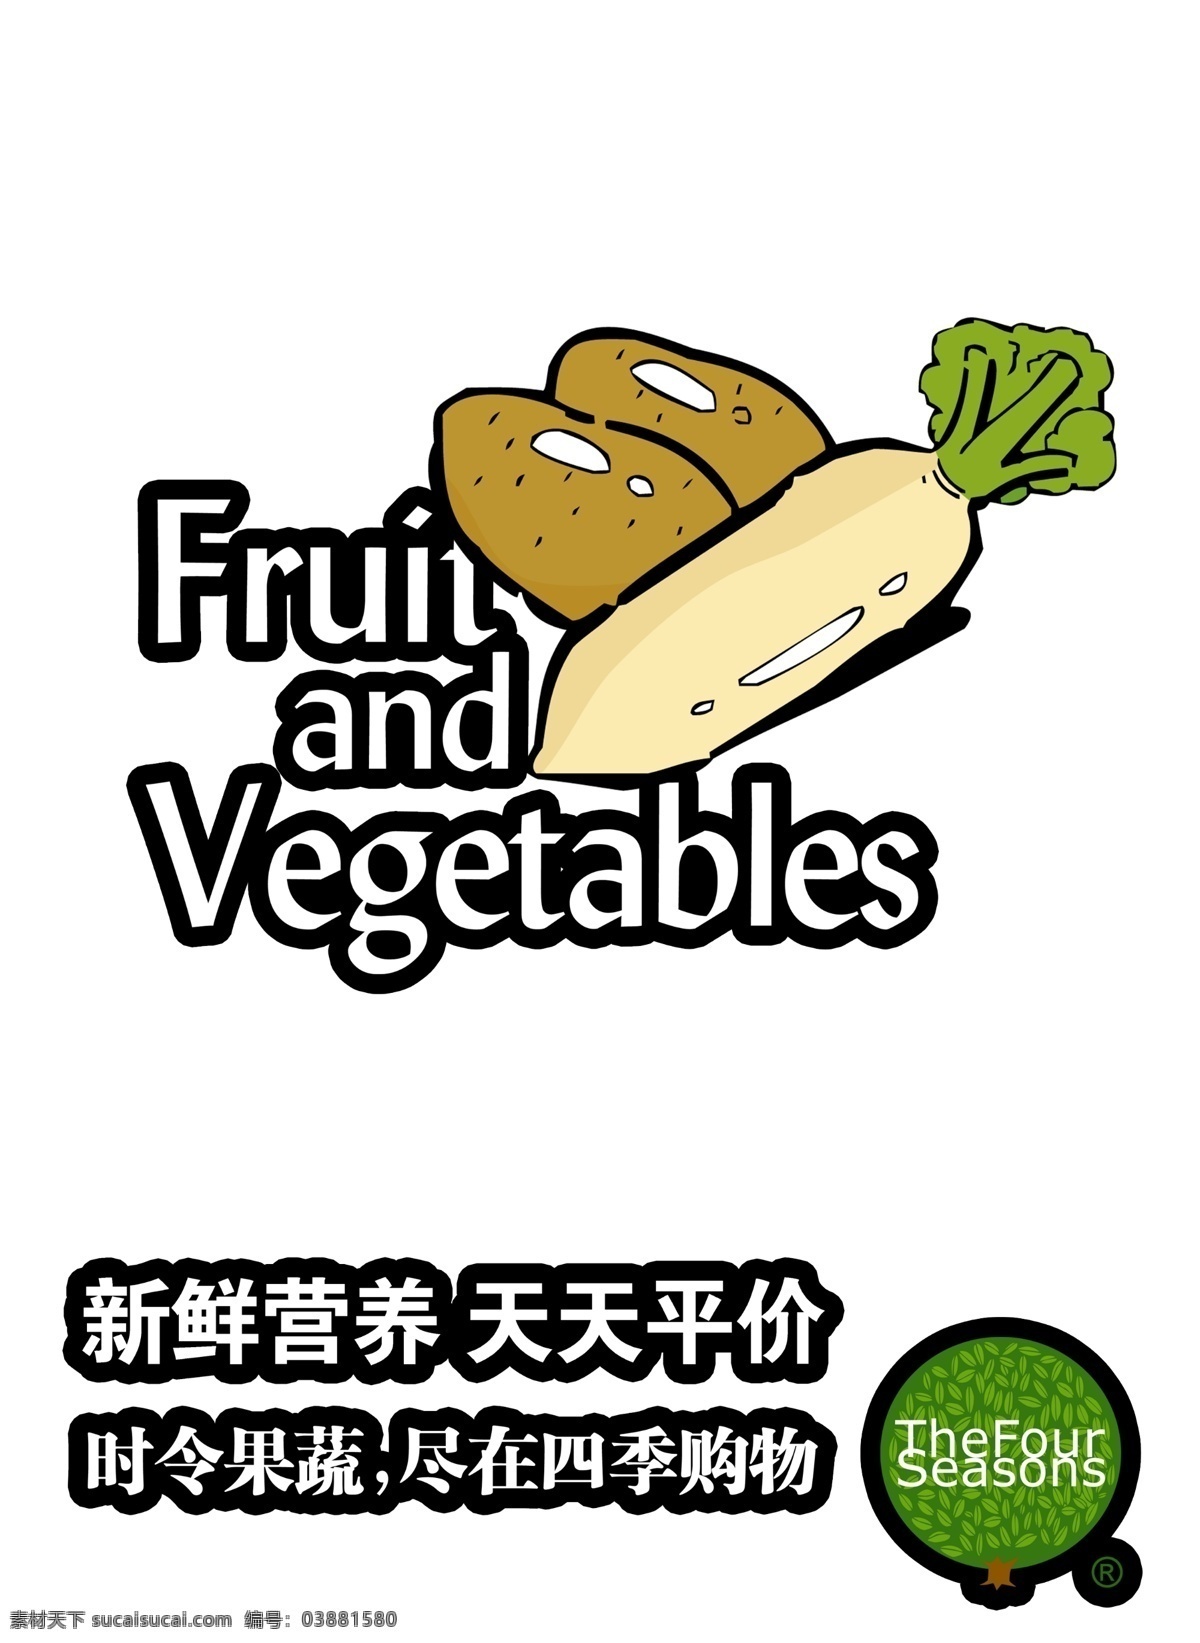 蔬菜广告 蔬菜 大萝卜 土豆 白色